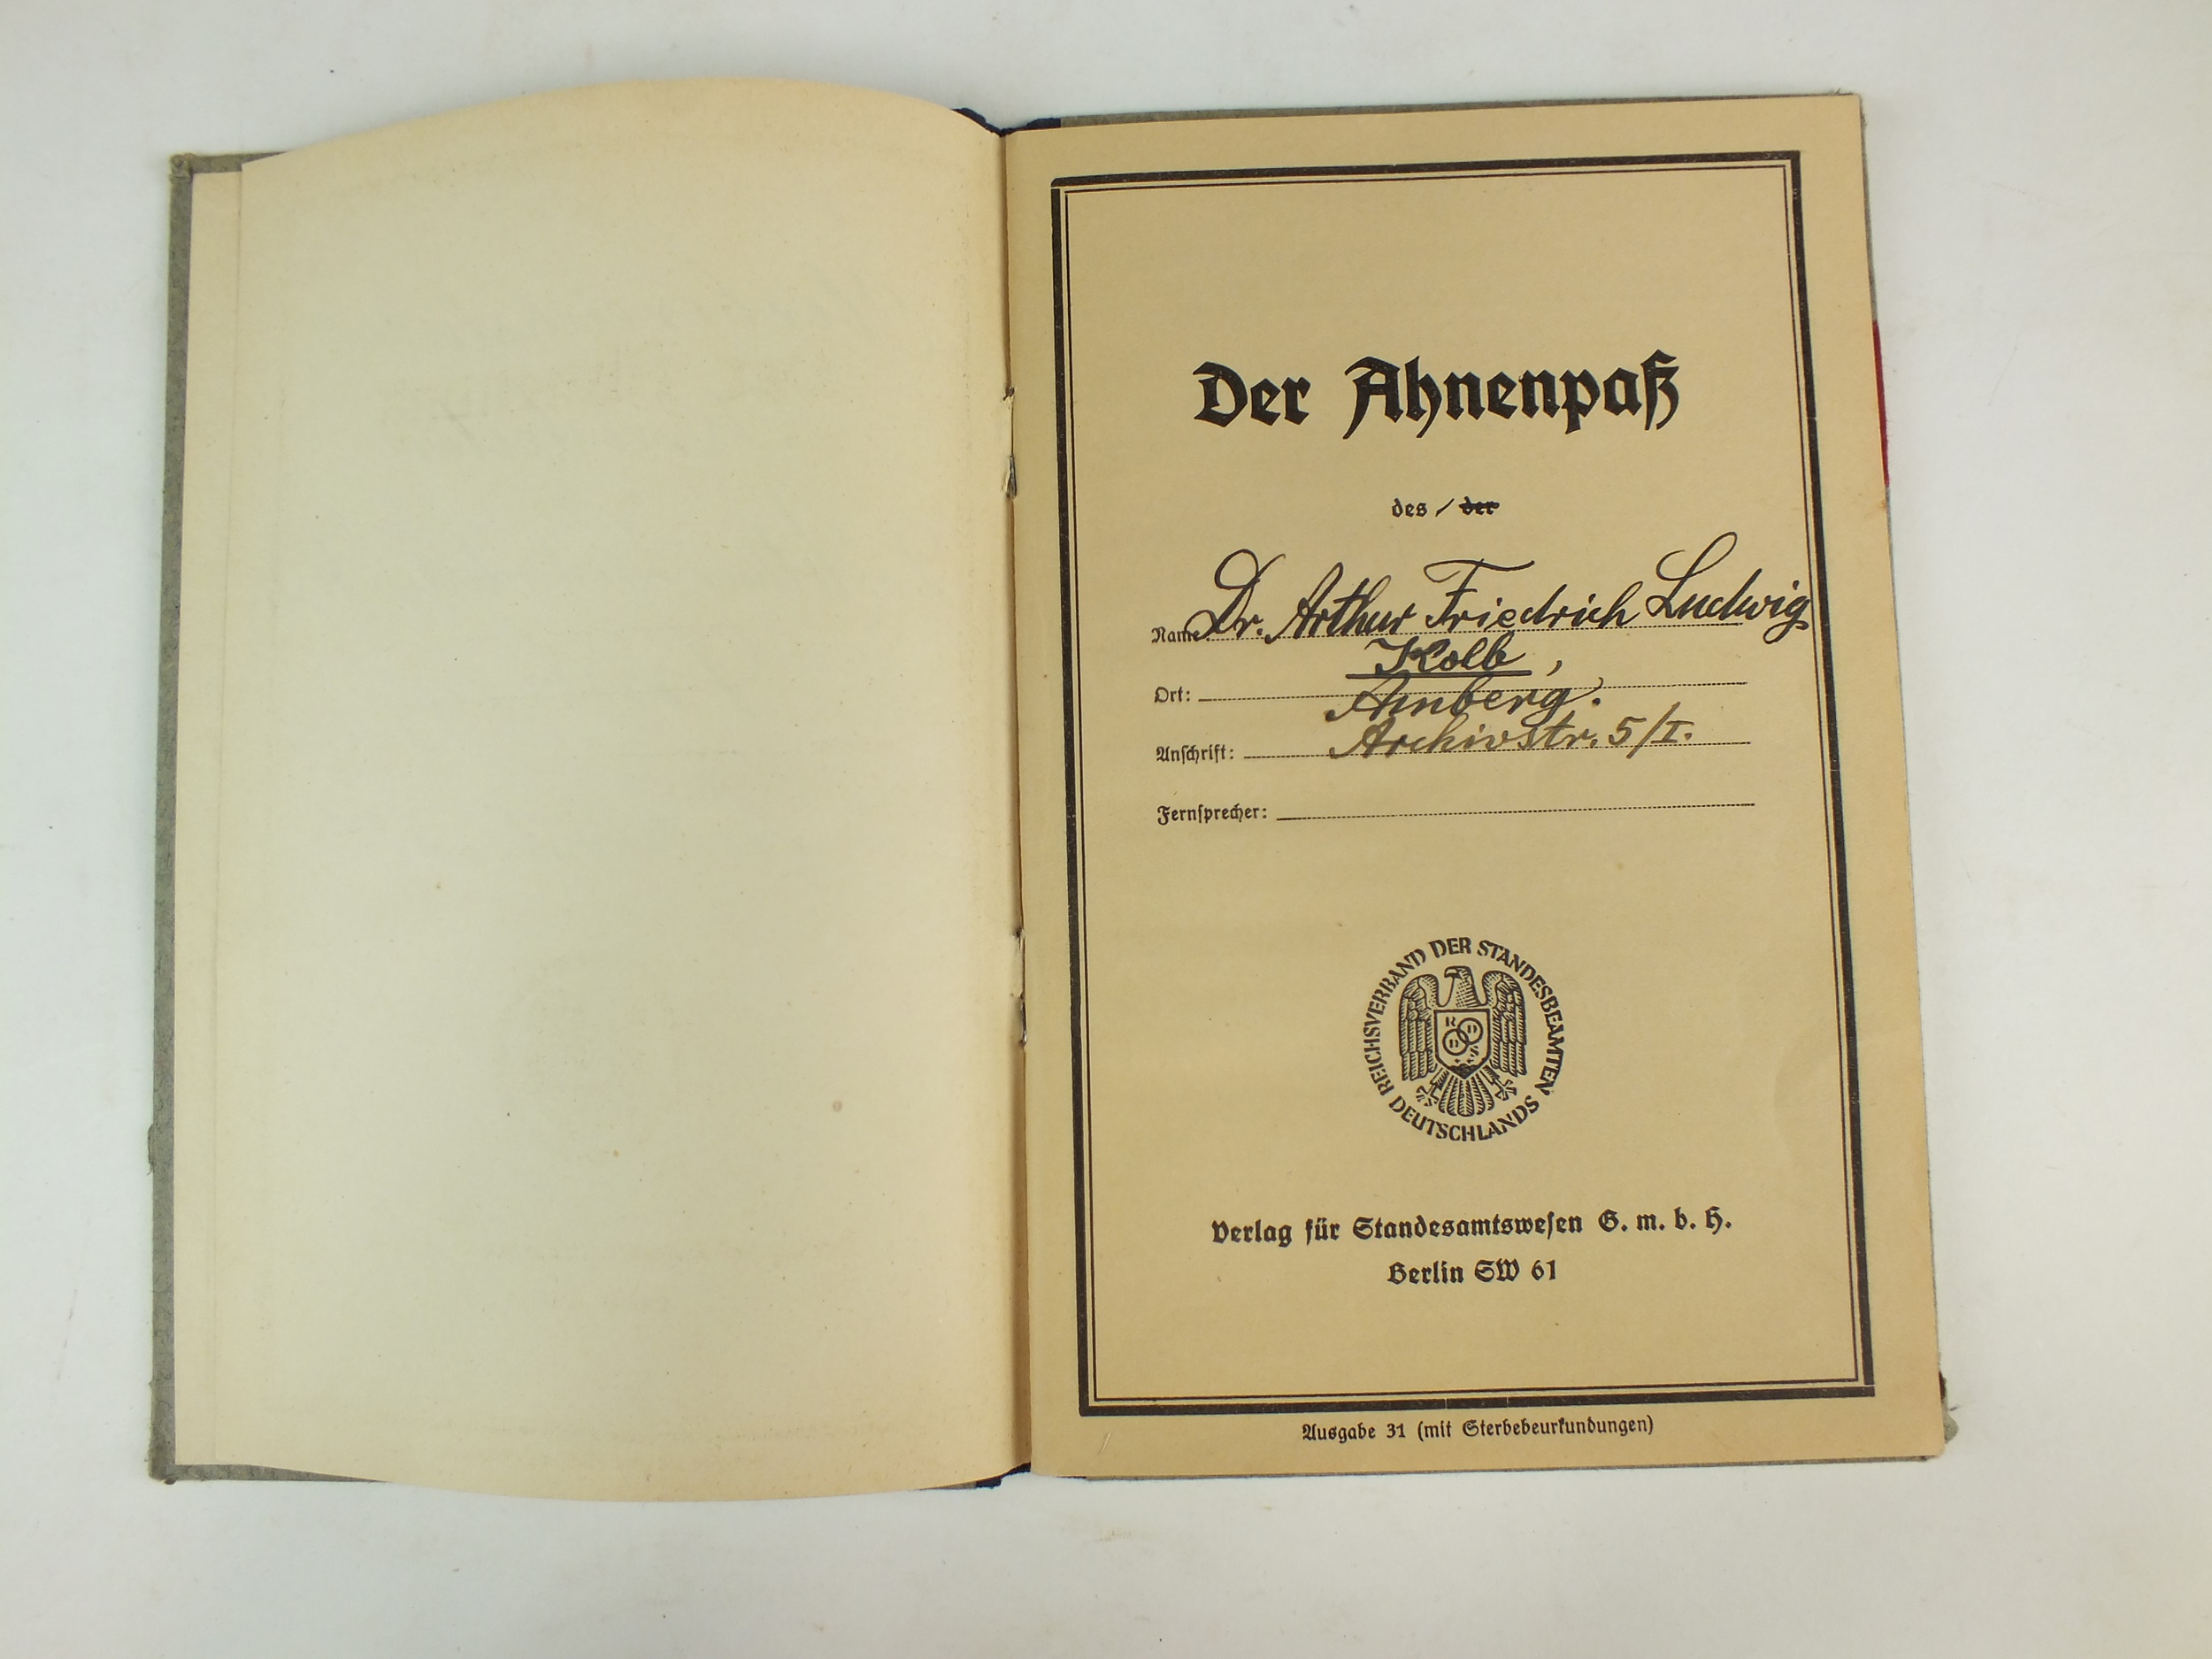 The Der Ahnenpass of Obereichsleiter Kreisleiter Dr. Arthur Kolb - Image 3 of 6